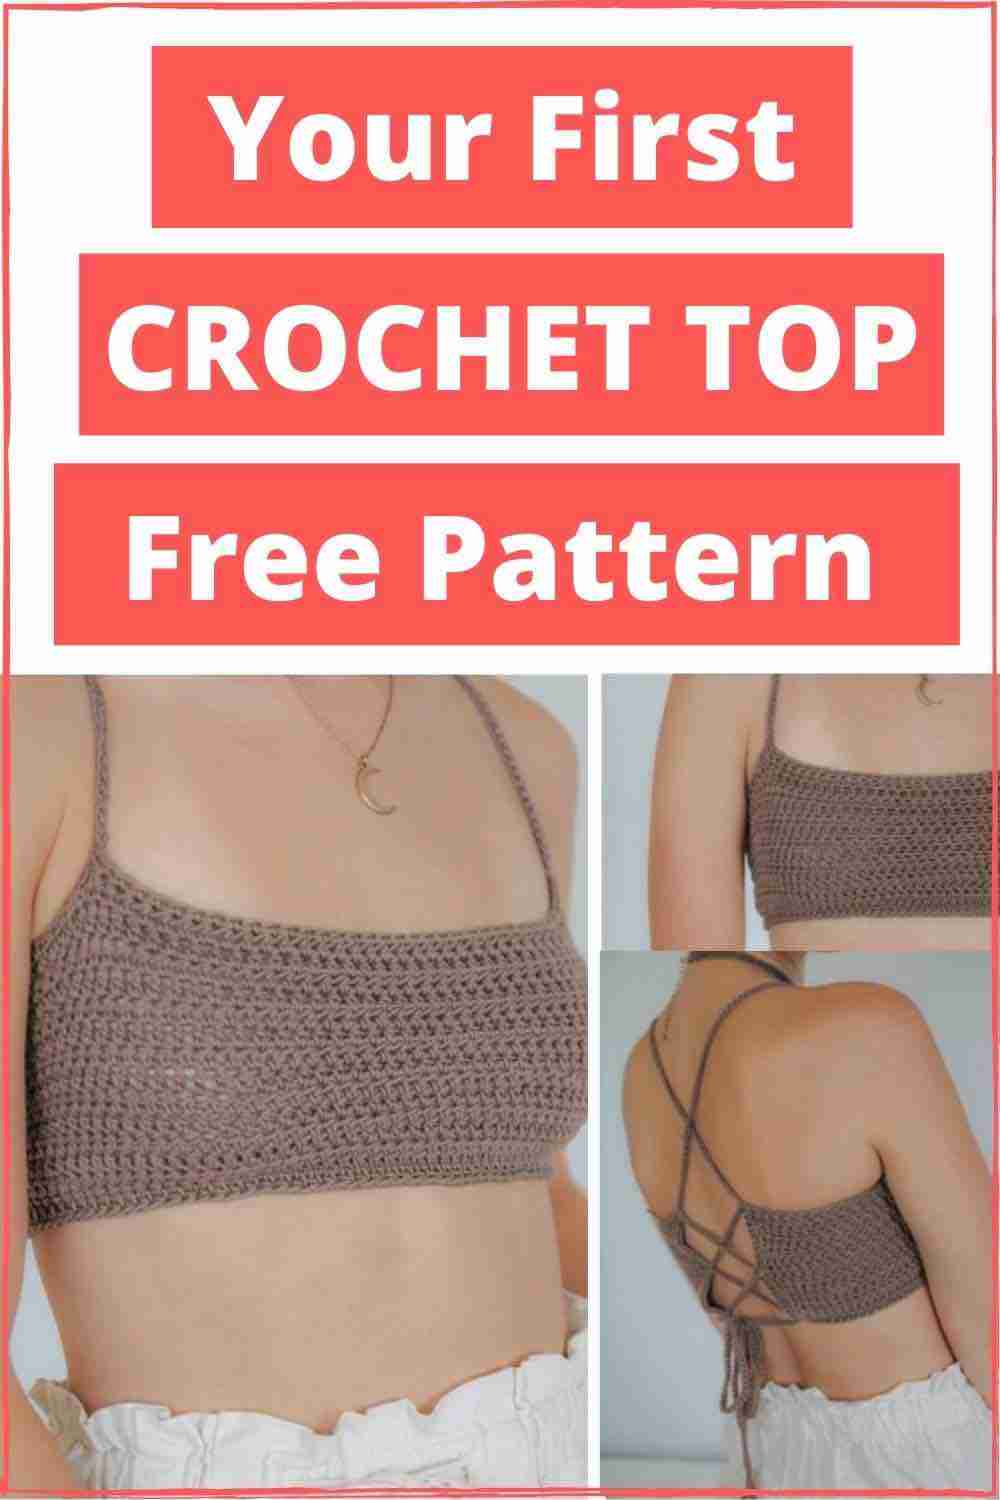 Crochet-Top-Free-Pattern